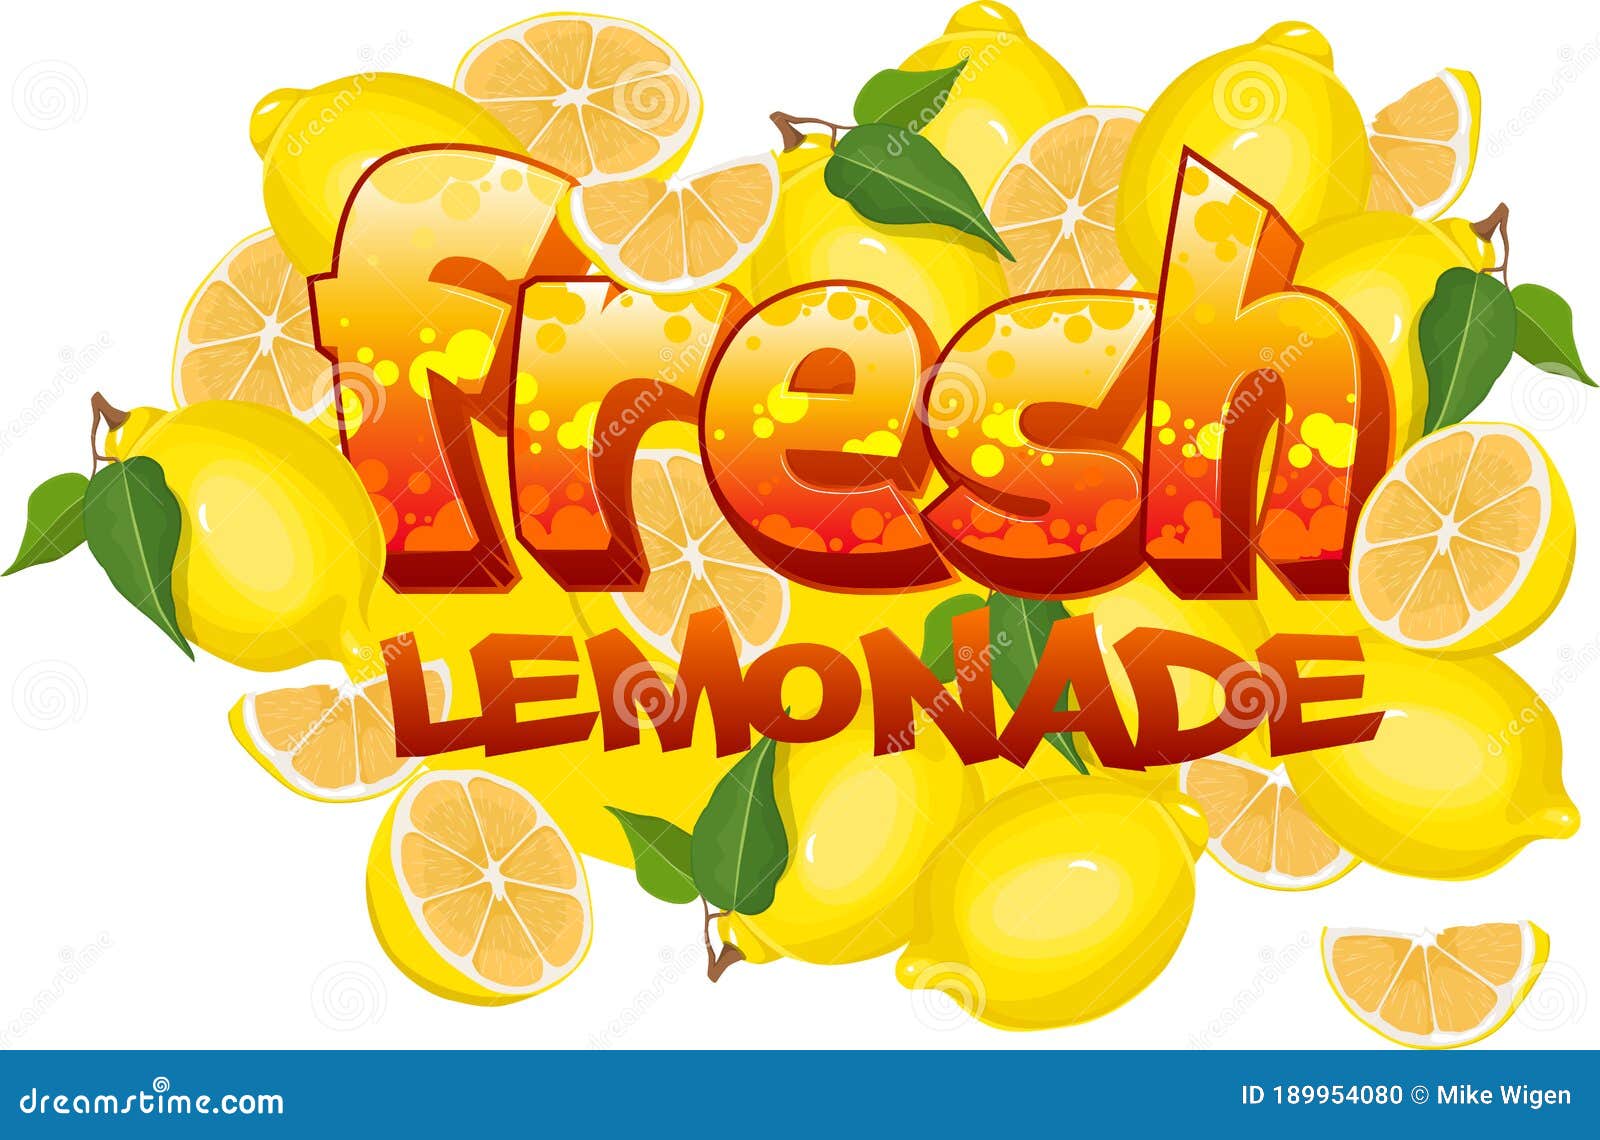 lemonade logo ideas 5